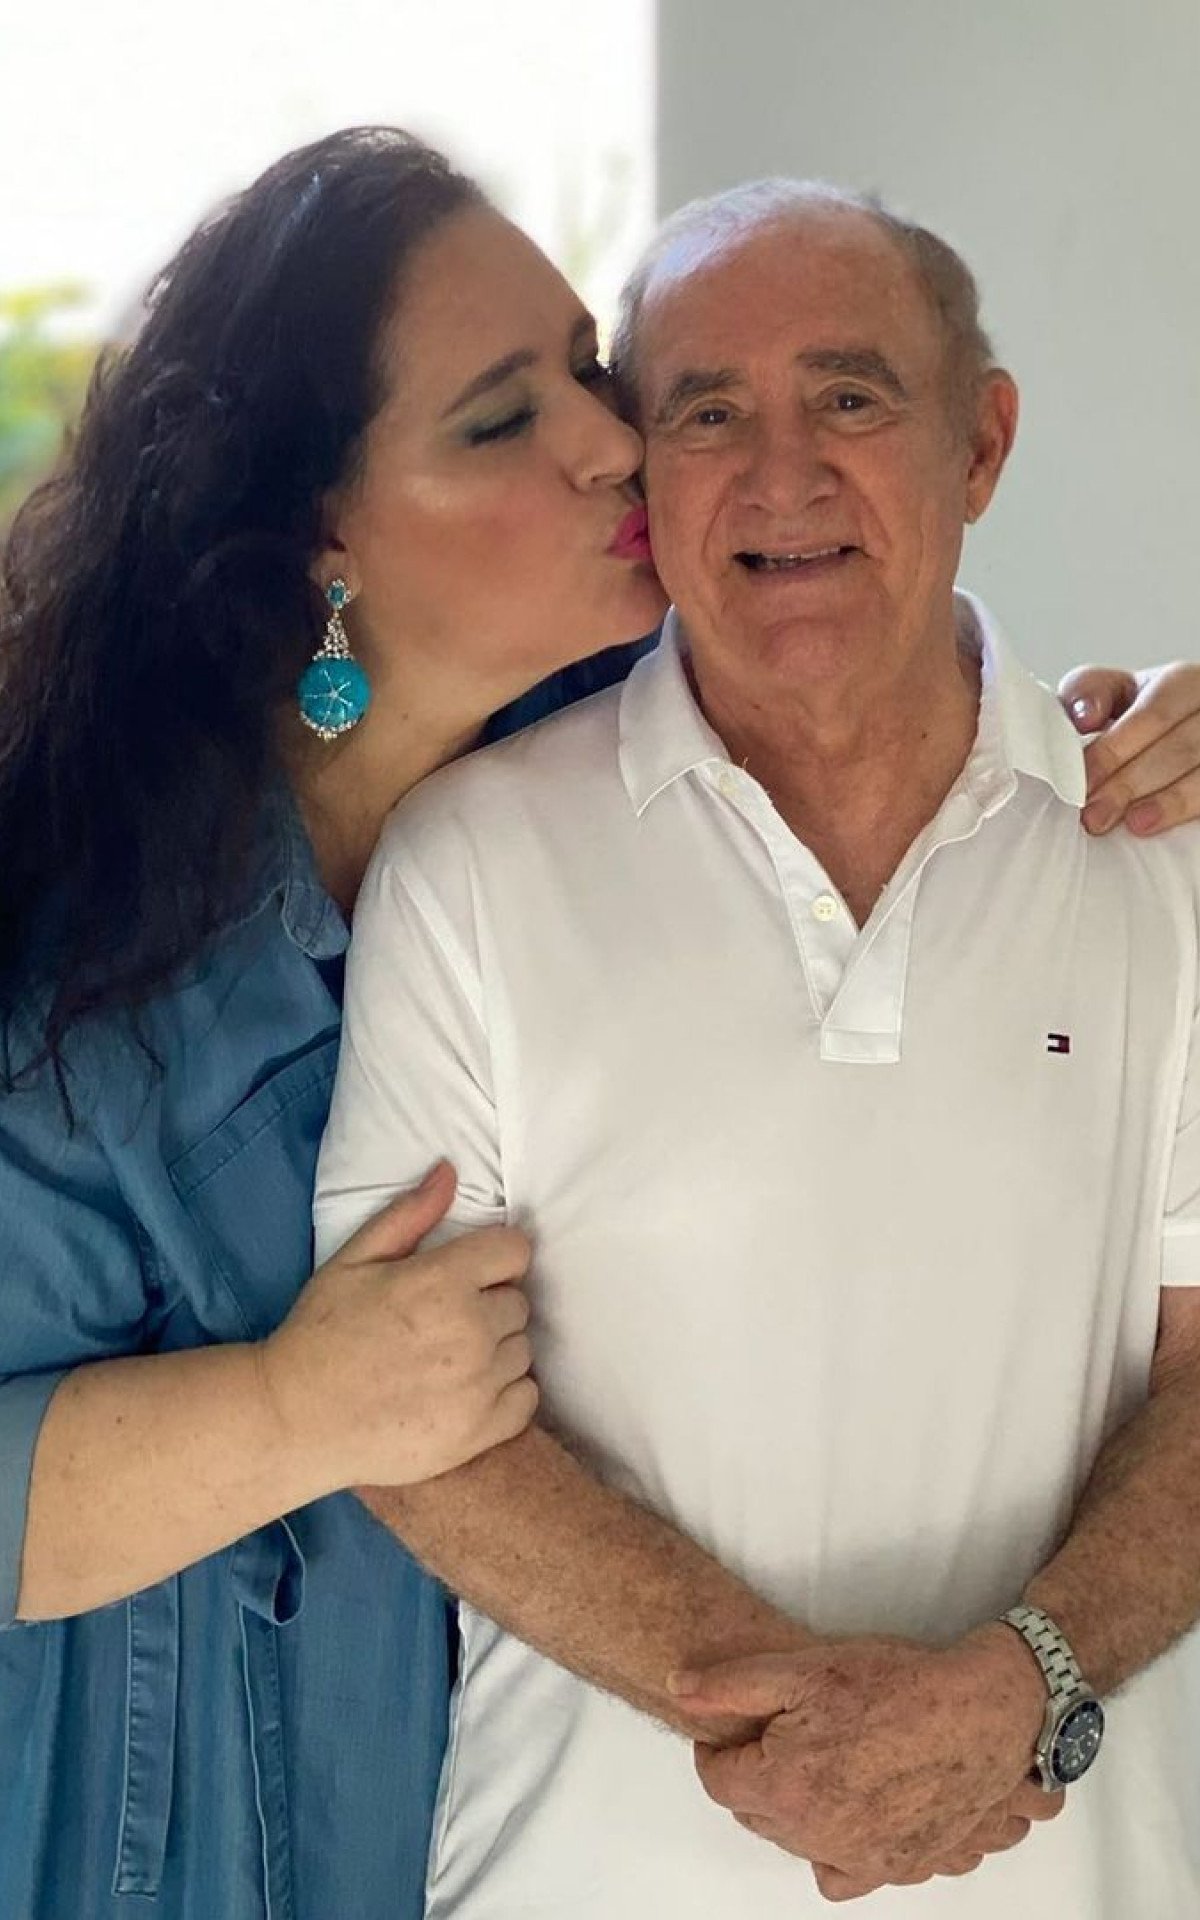 Mulher de Renato Aragão compartilha antes e depois do casal e reflete: 'Testemunho de resiliência' | Celebridades